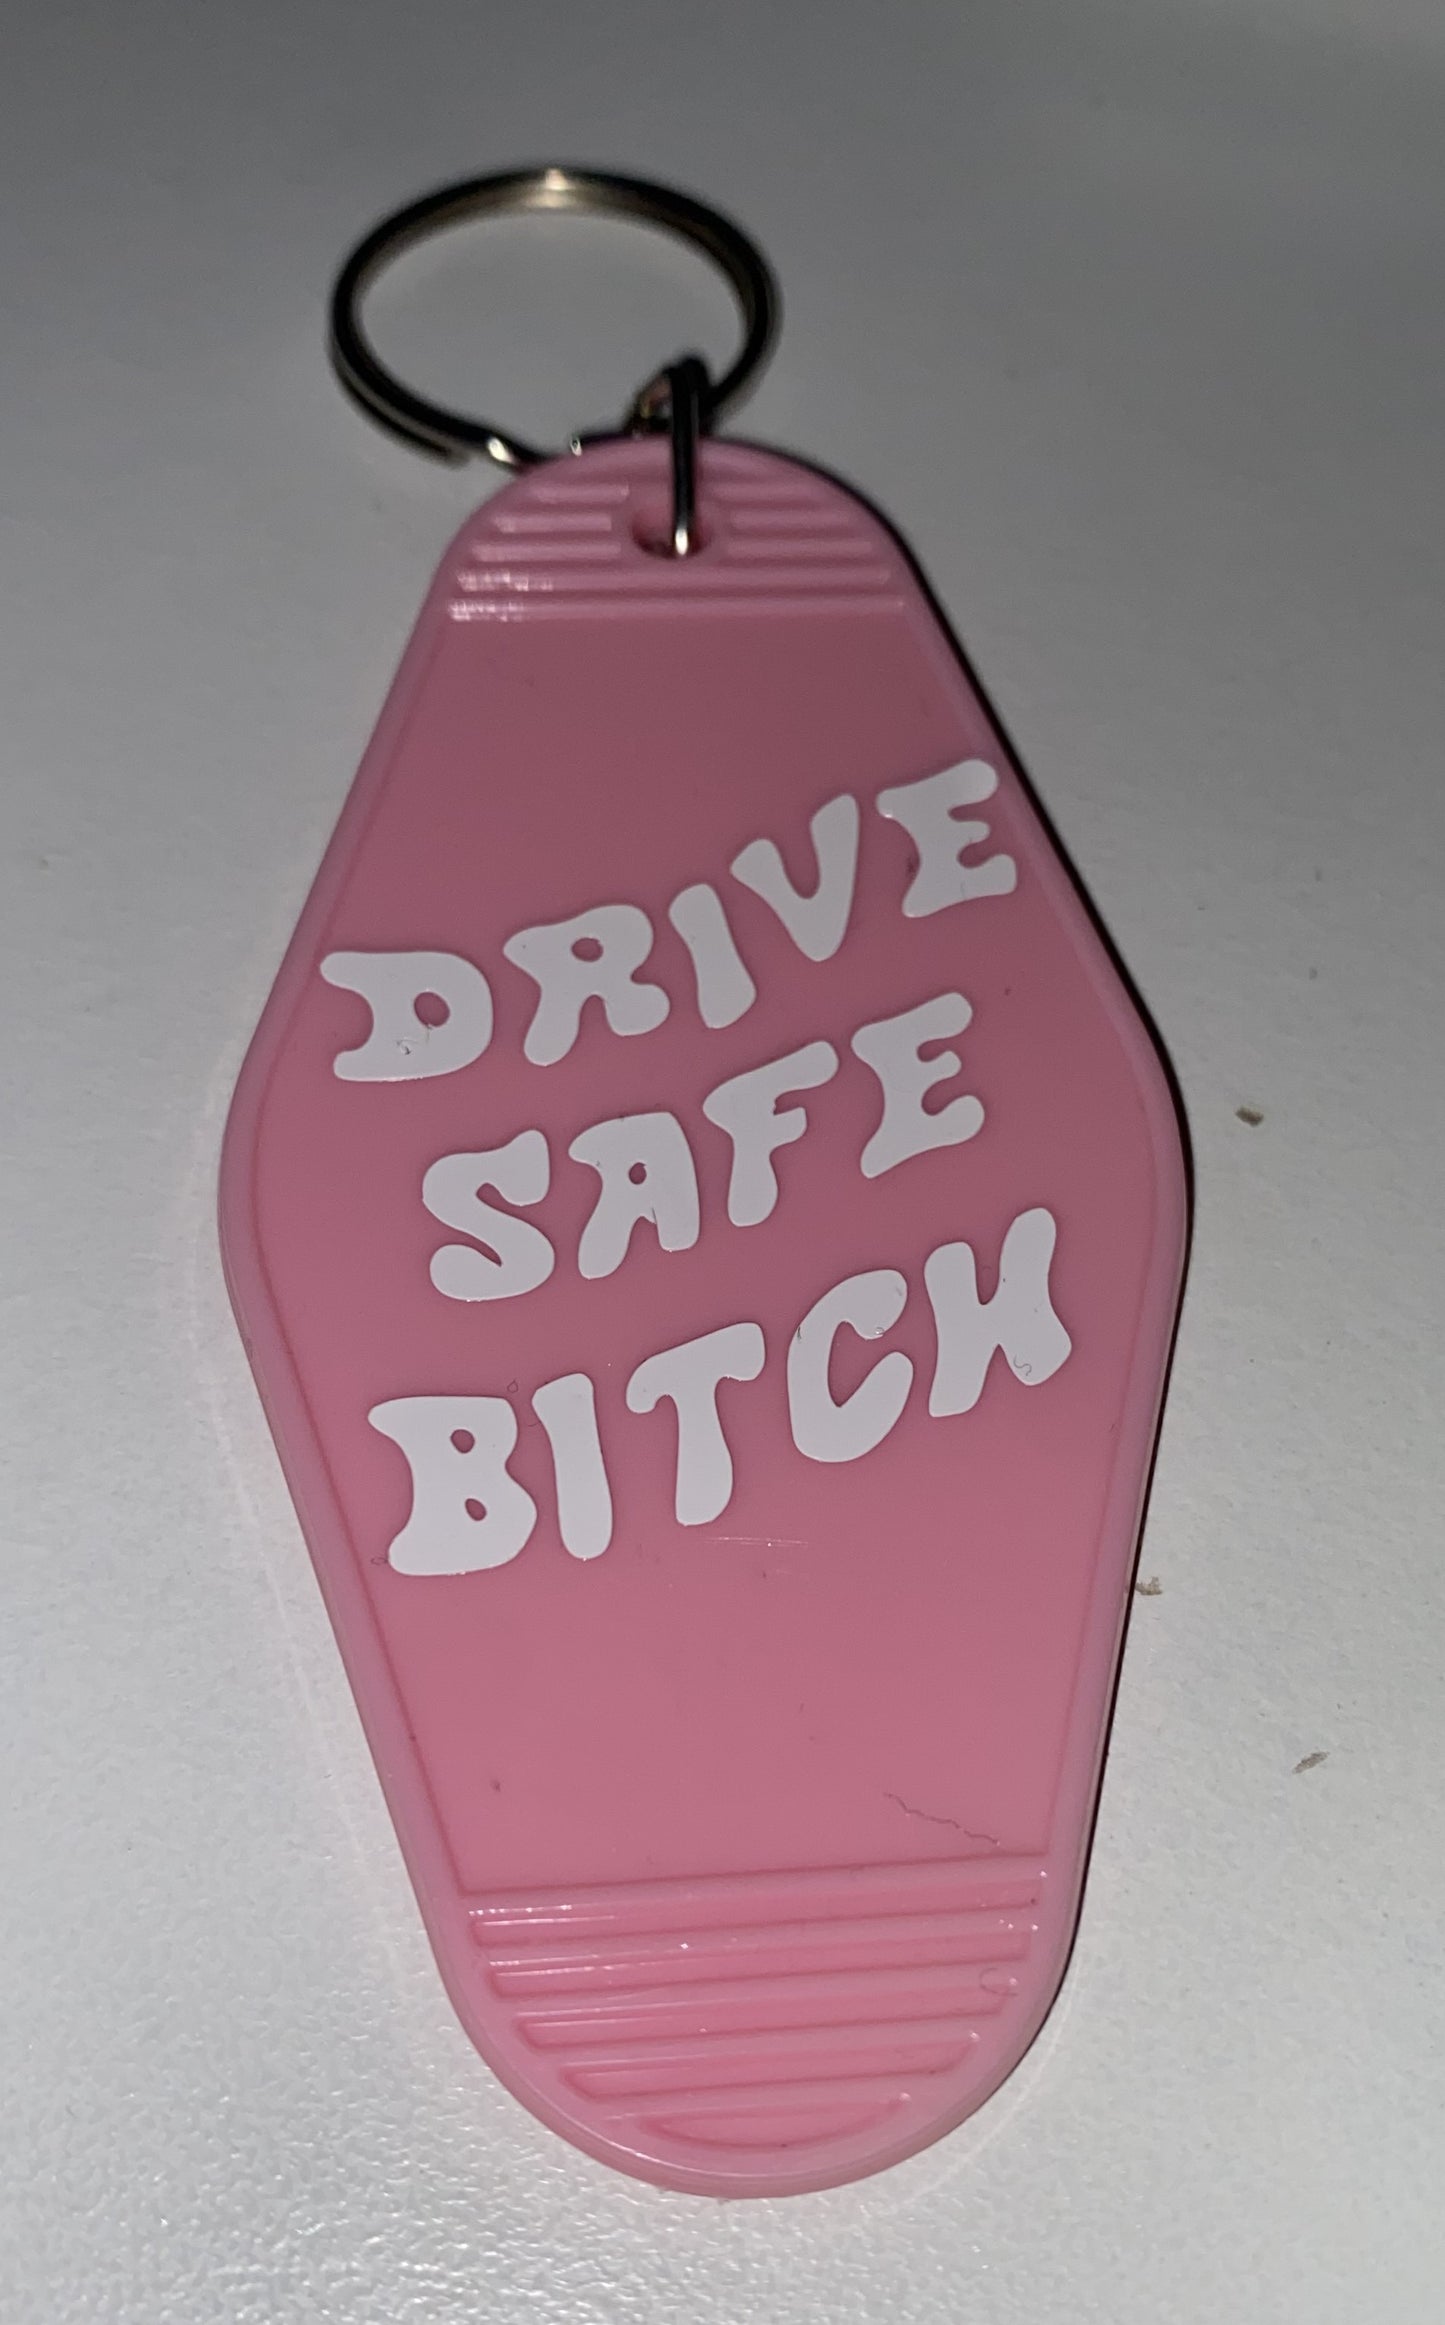 Drive Safe Key Chain